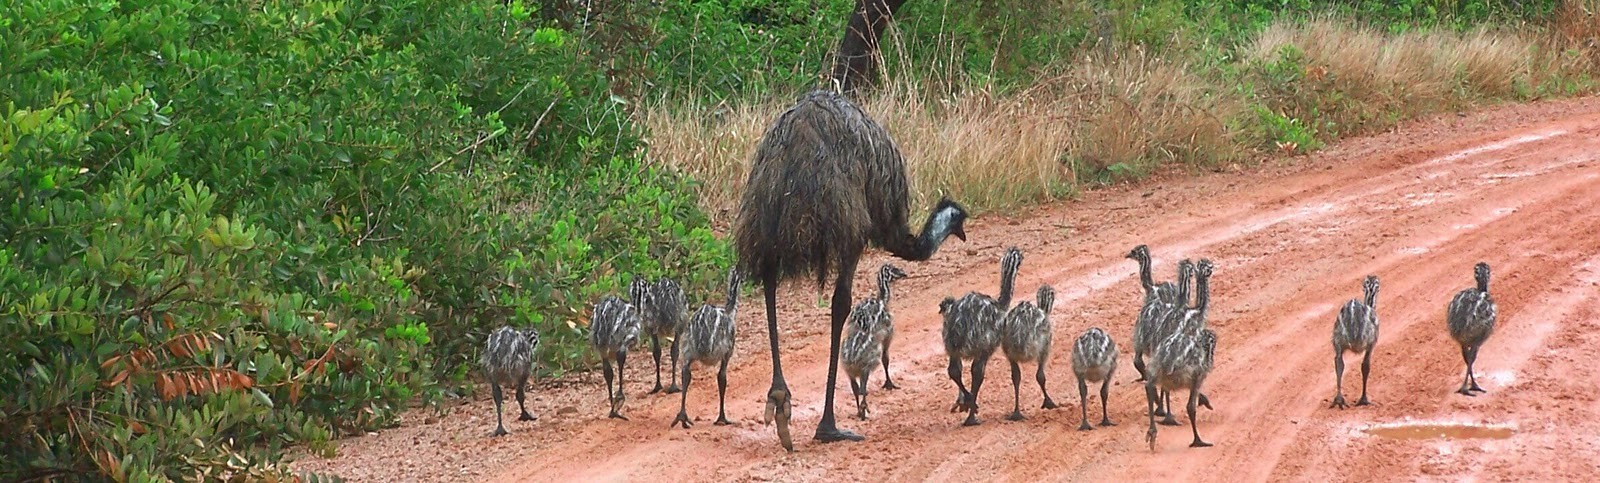 Emu familie